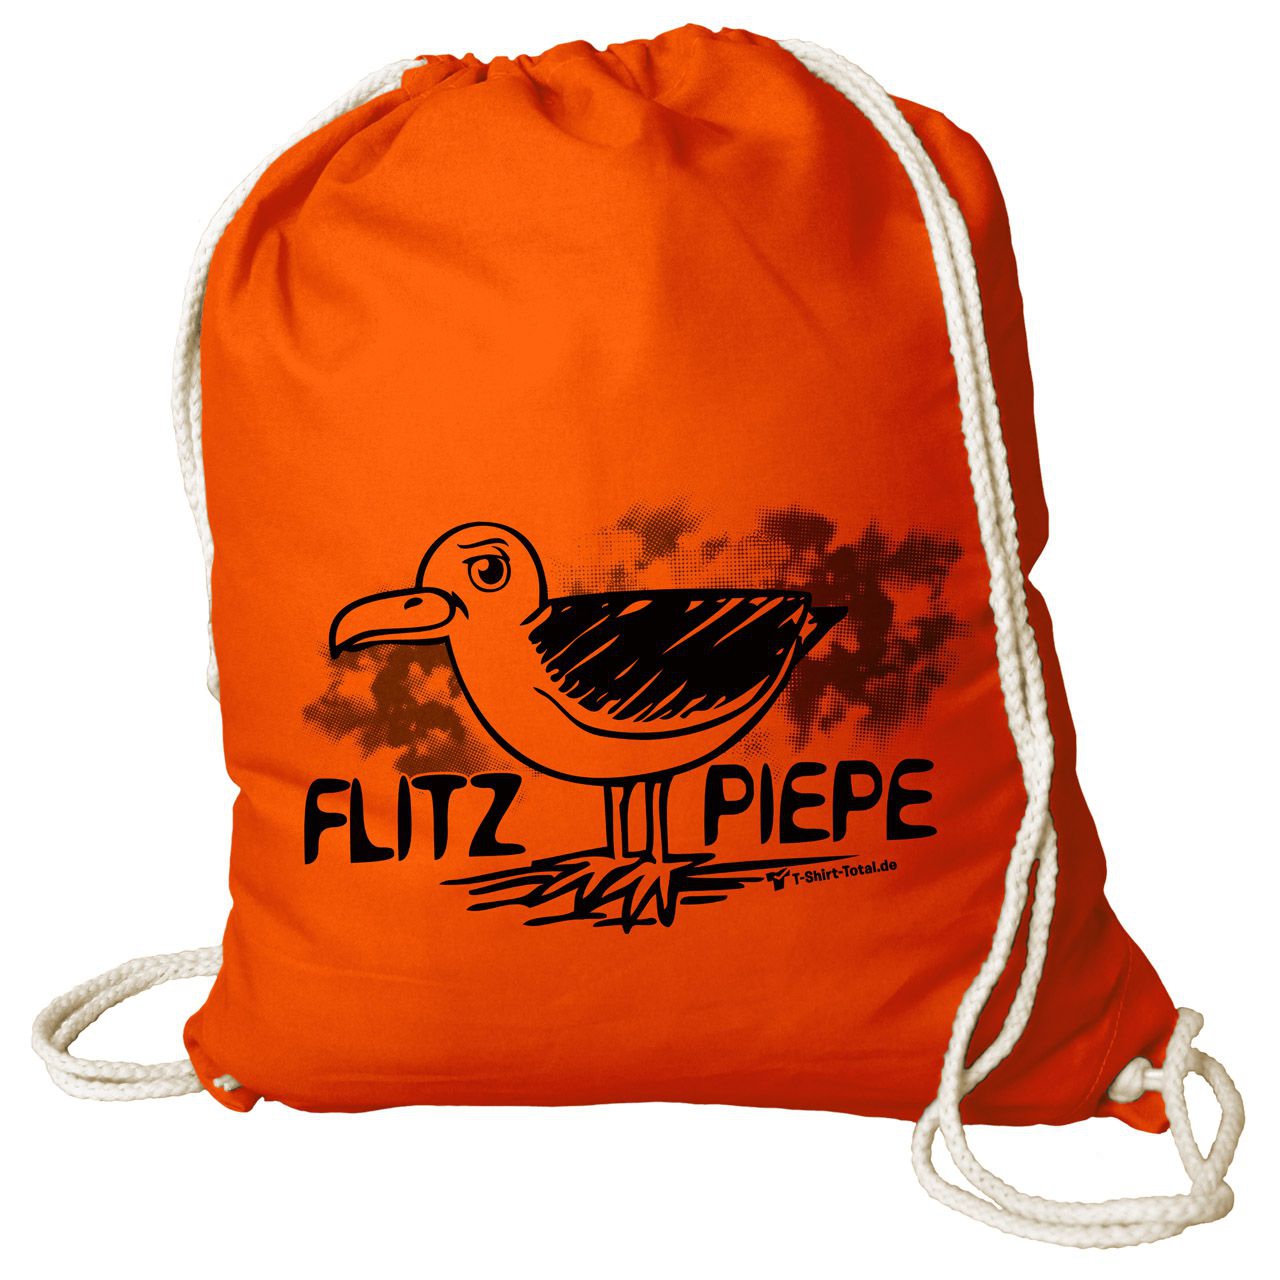 Flitzpiepe Rucksack Beutel orange